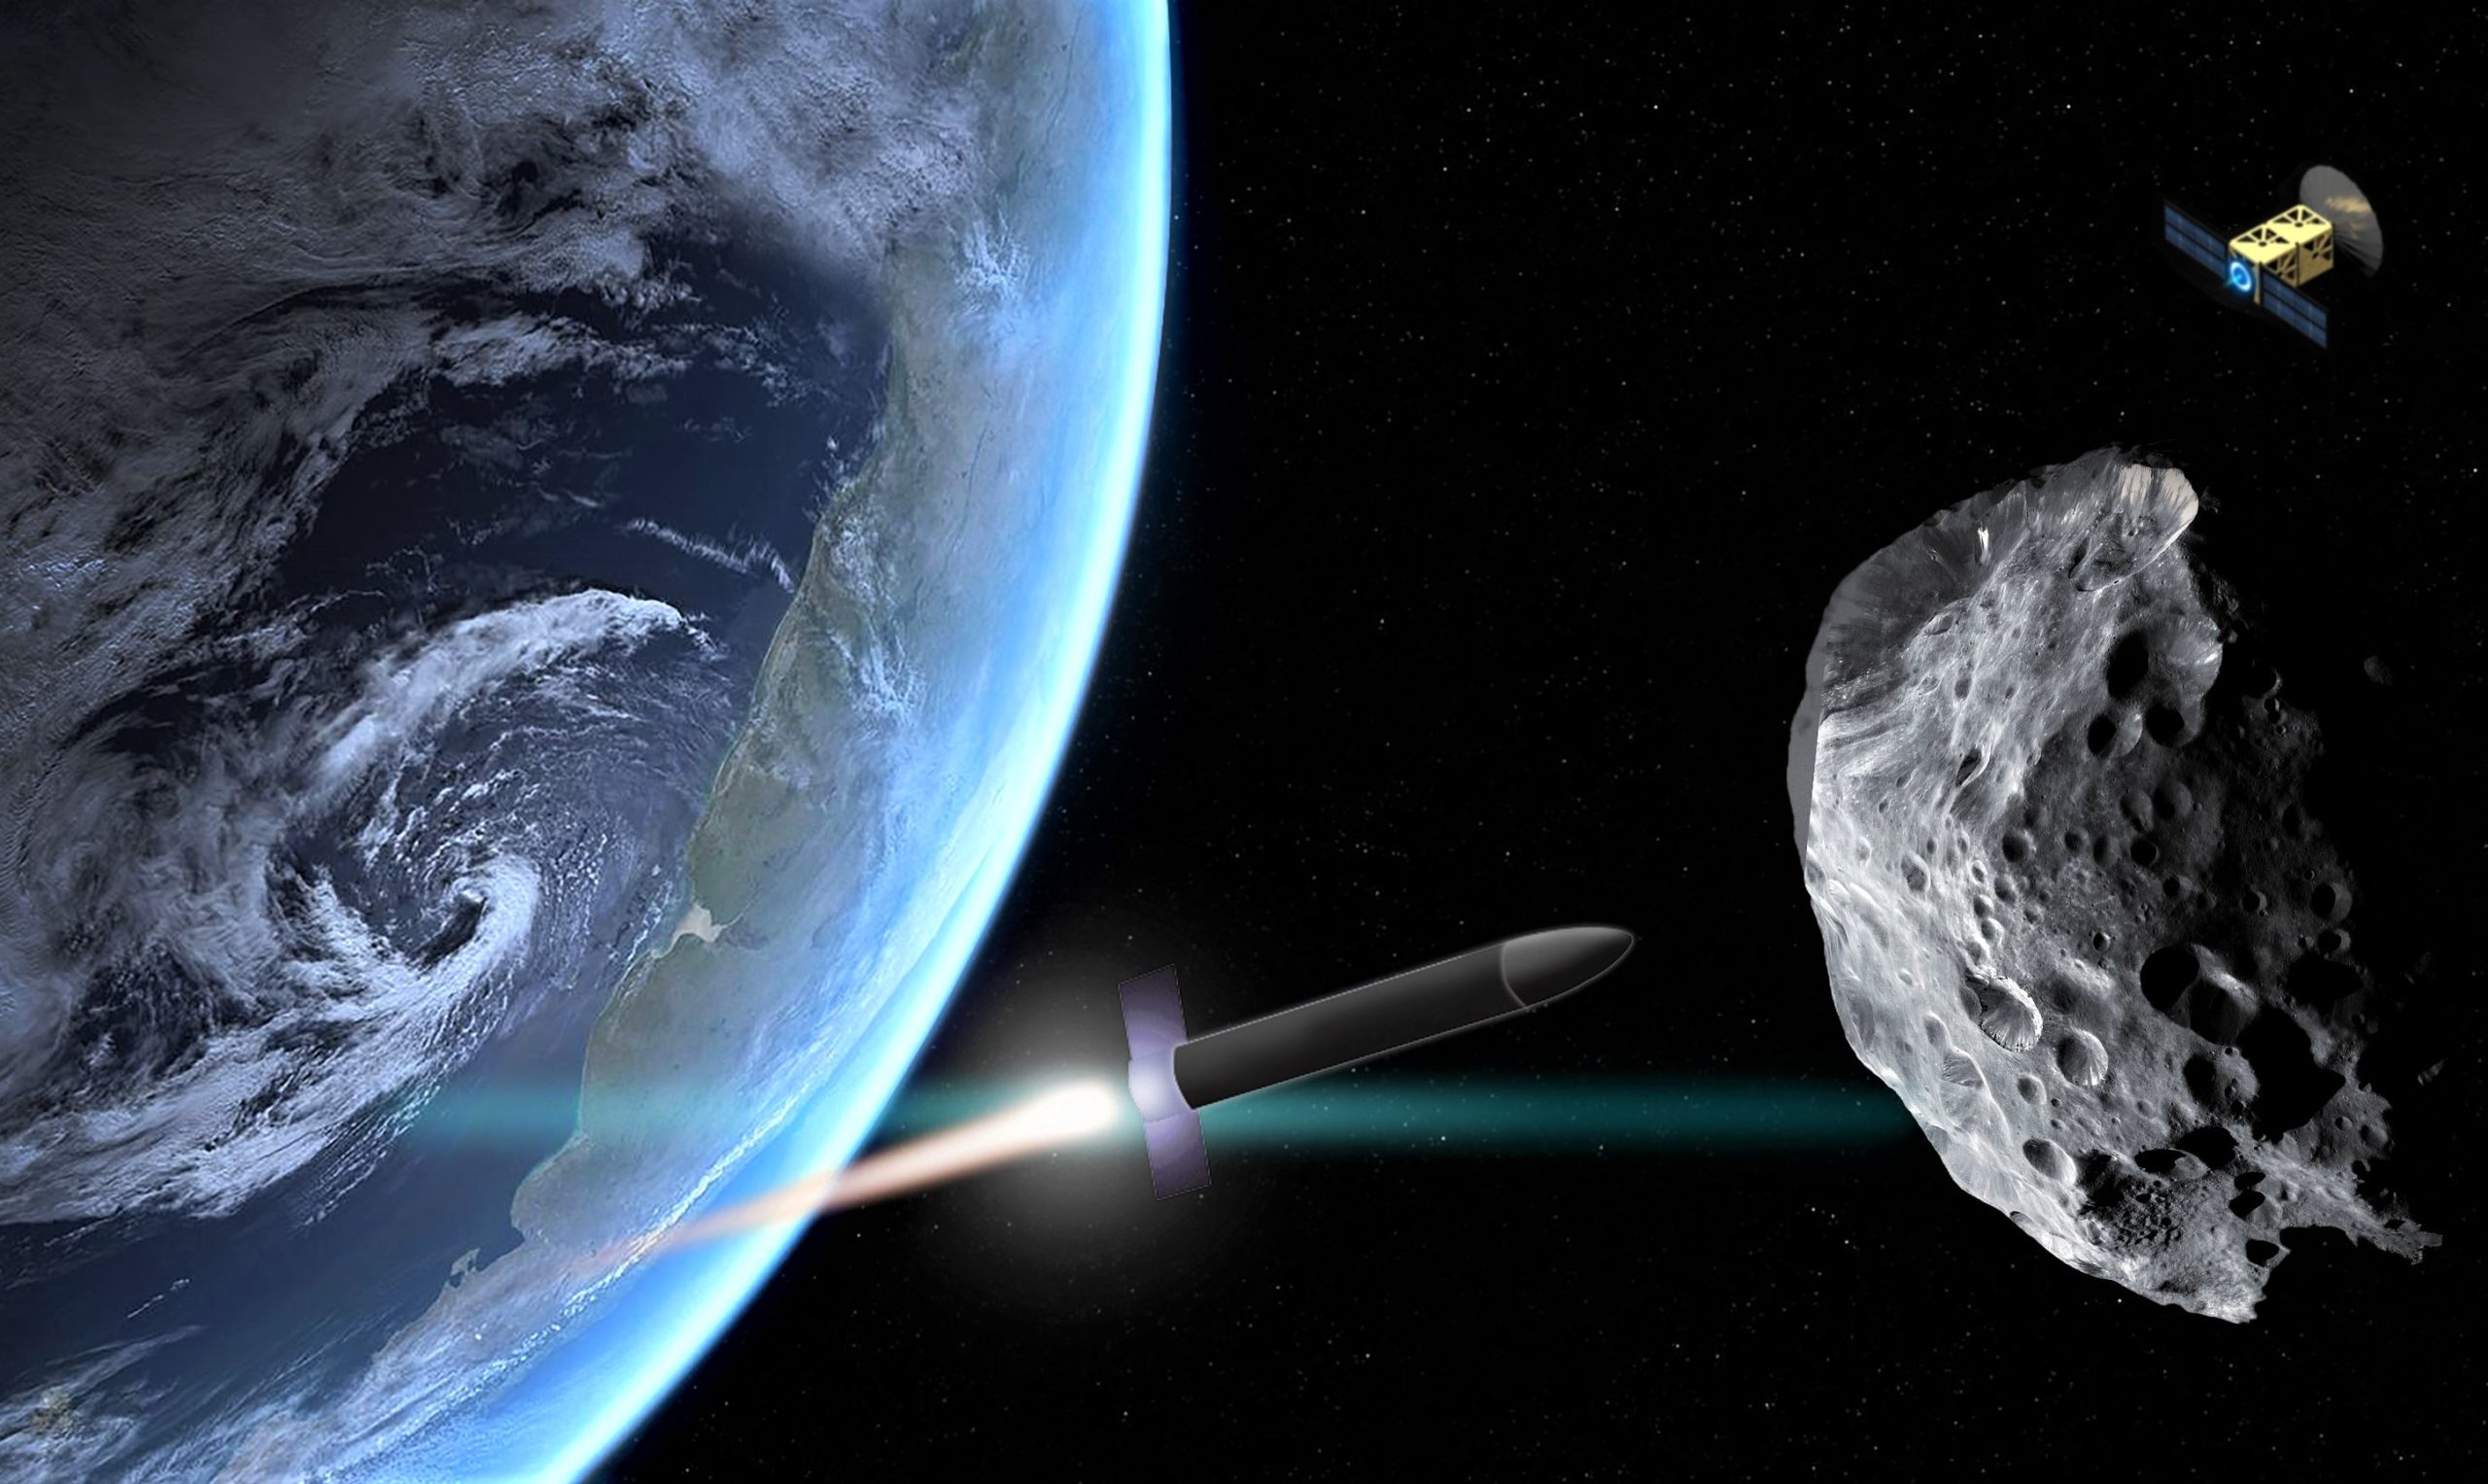 НАСА и ЕКА попытаются отклонить астероид в своей первой миссии по защите планеты